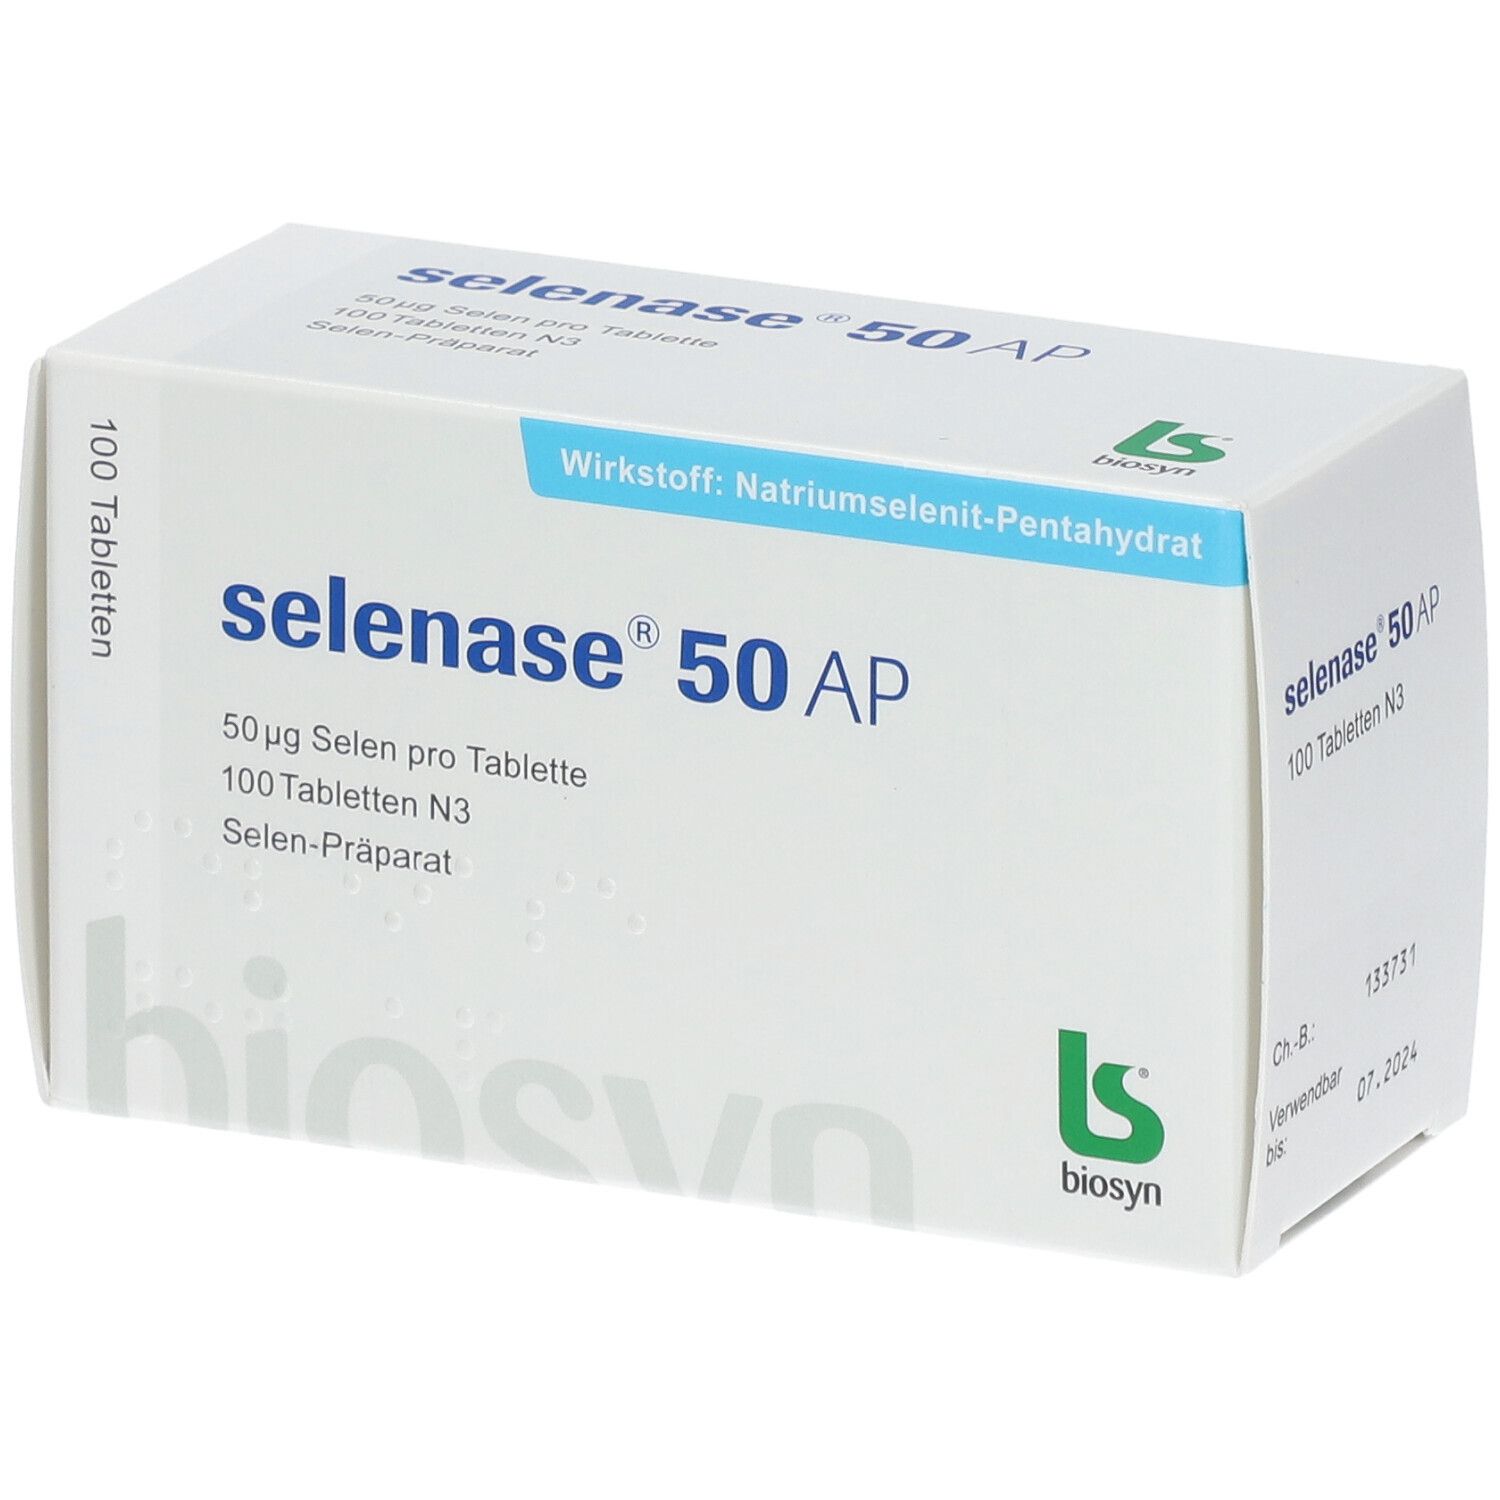 selenase® 50 Ap Tabletten